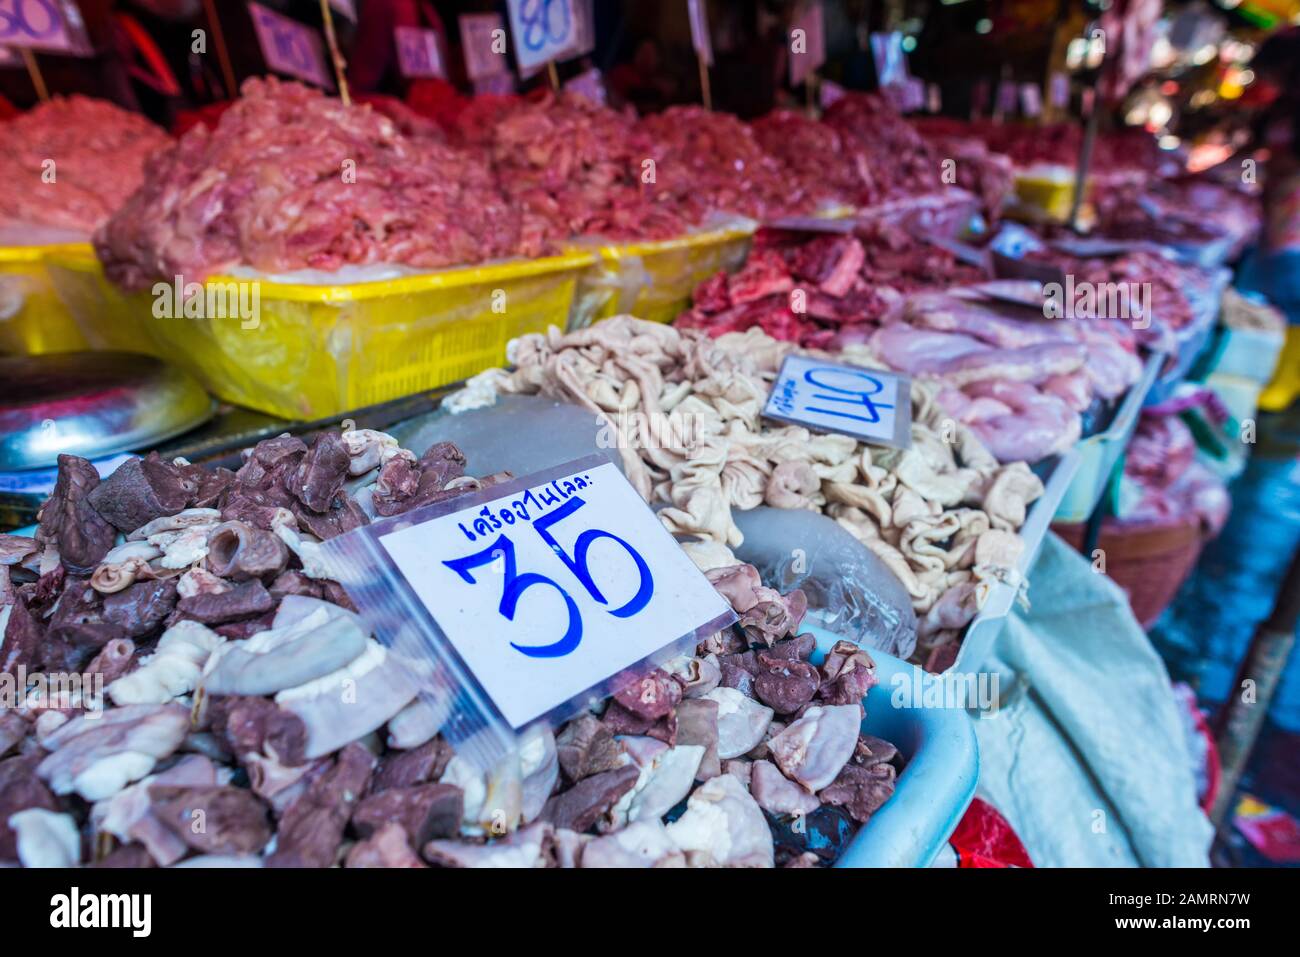 Kholng Toei Market Bangkok: Markt Stall, der verschiedene Fleischschnitte verkauft, darunter Magen, Darm und andere Organe in Eimern und Preismarkierungen Stockfoto